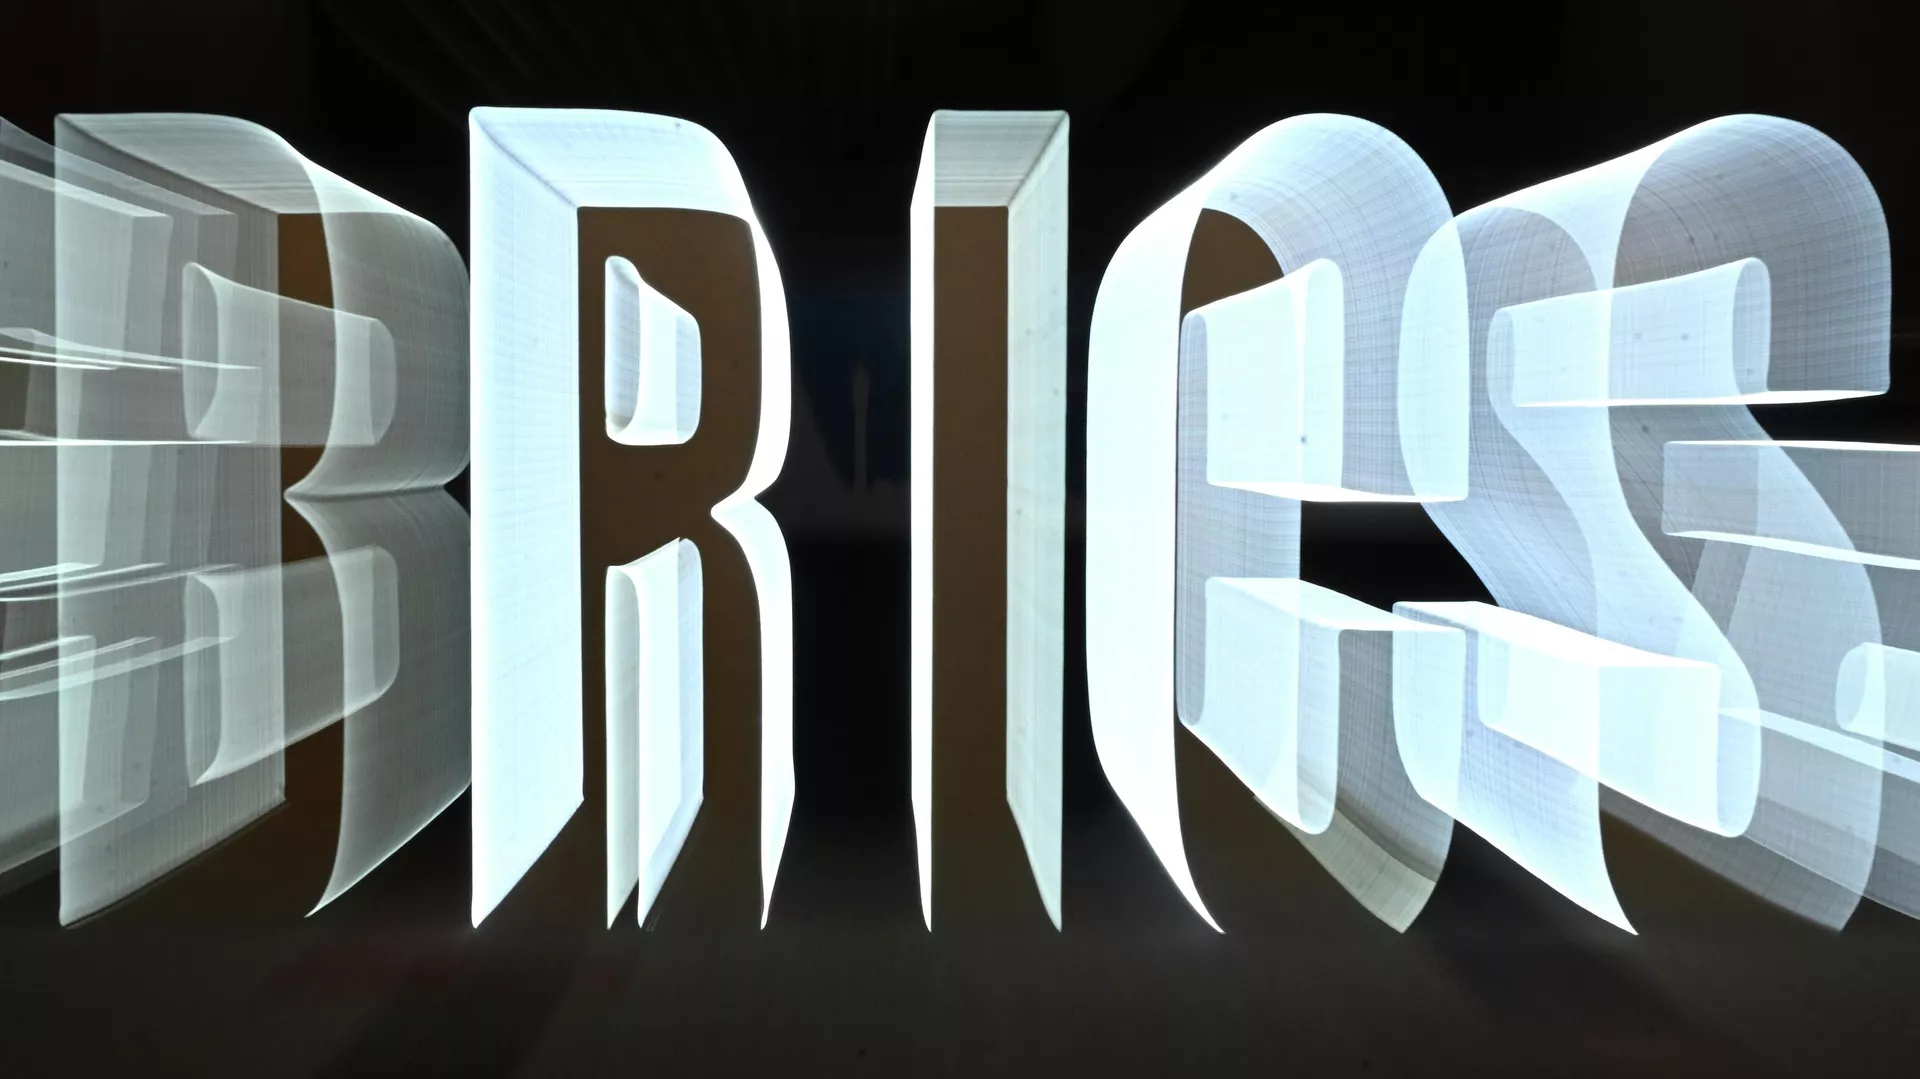  El grupo BRICS: desde una idea hasta una asociación global